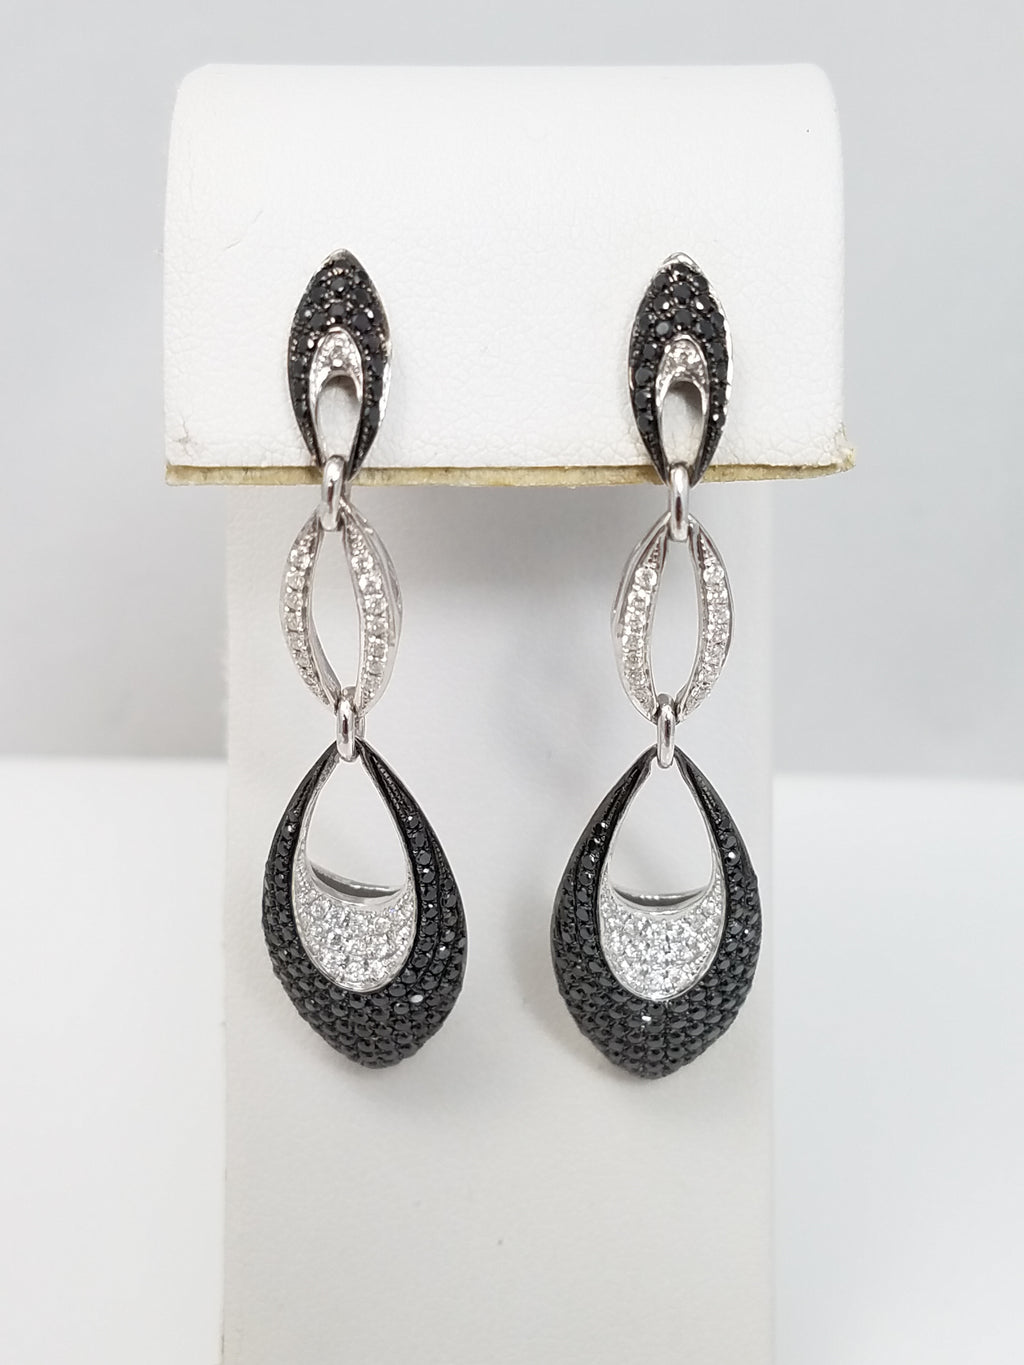 New! 14k White Gold 2ctw Black White Diamond Dangle Earrings